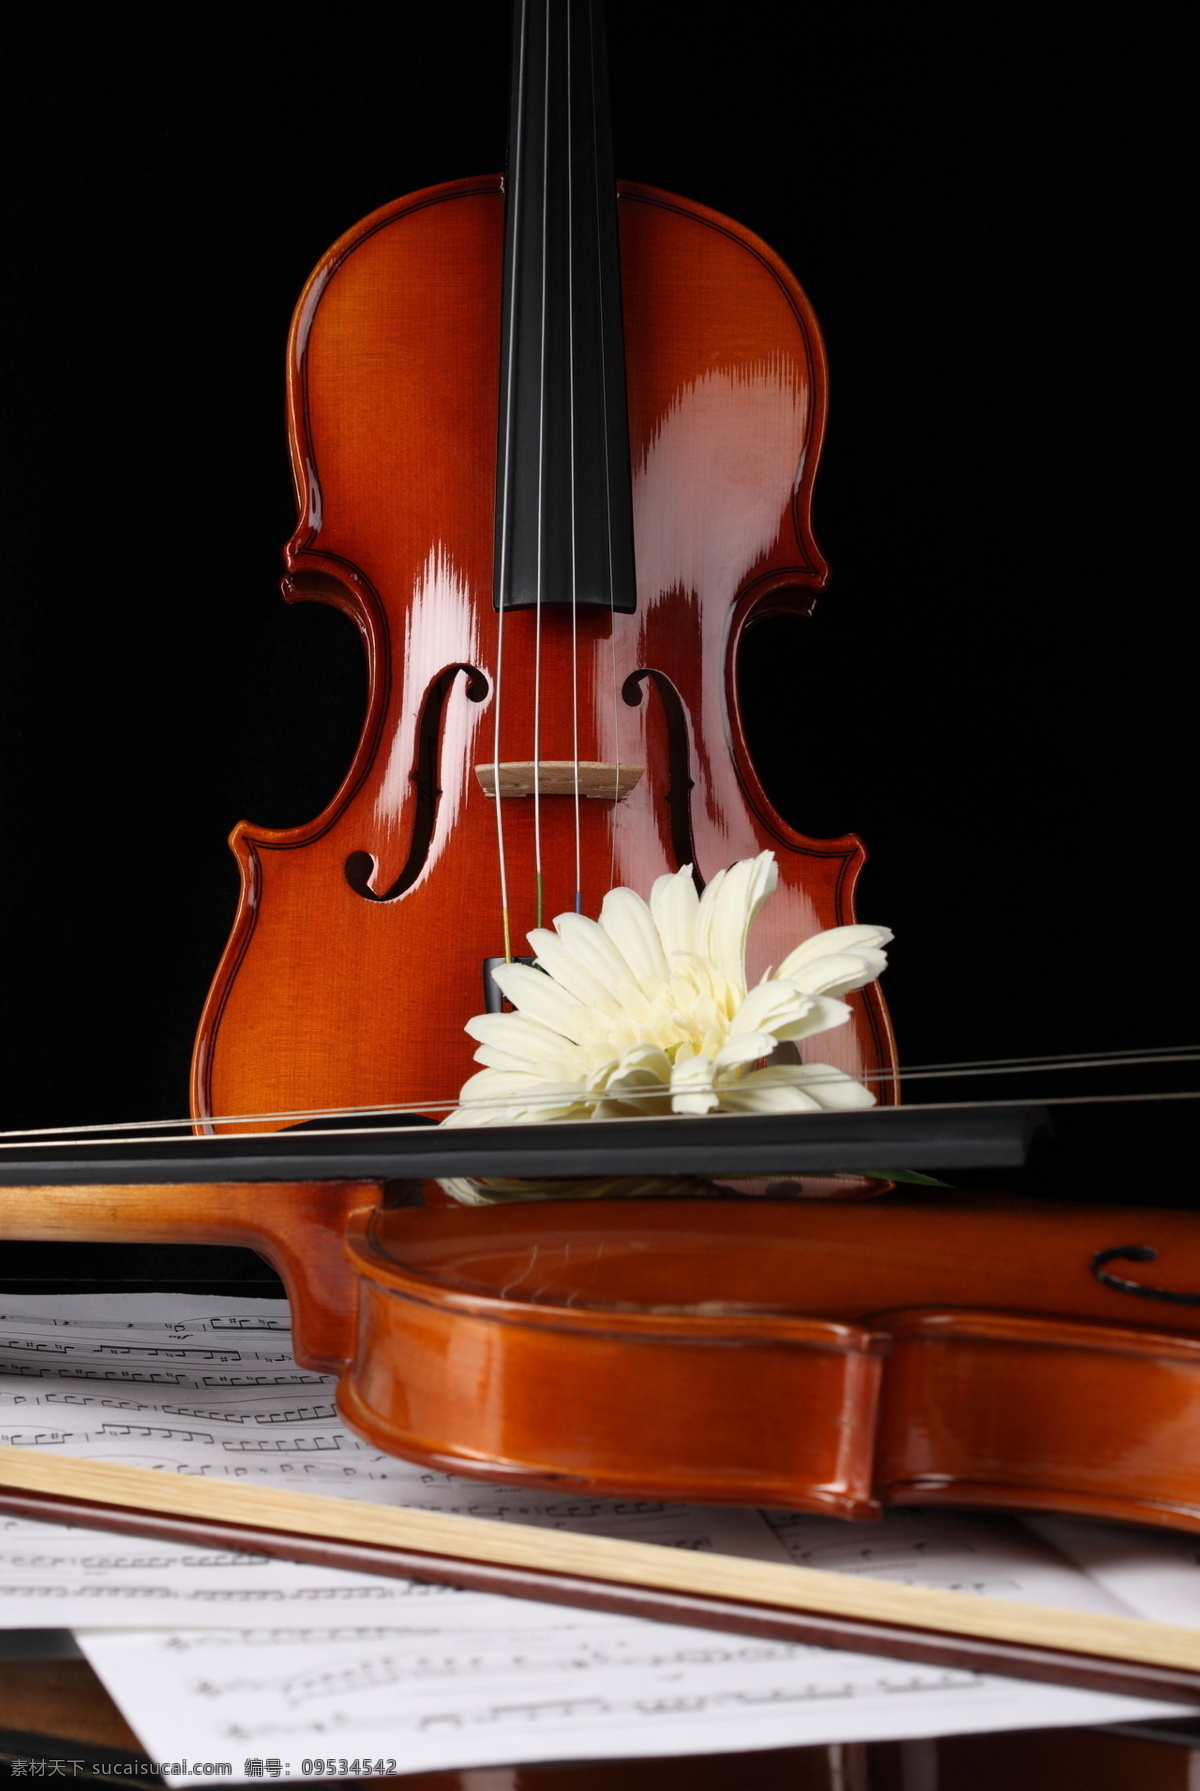 小提琴 鲜花 乐谱 音符 中提琴 文化艺术 音乐 花 影音娱乐 生活百科